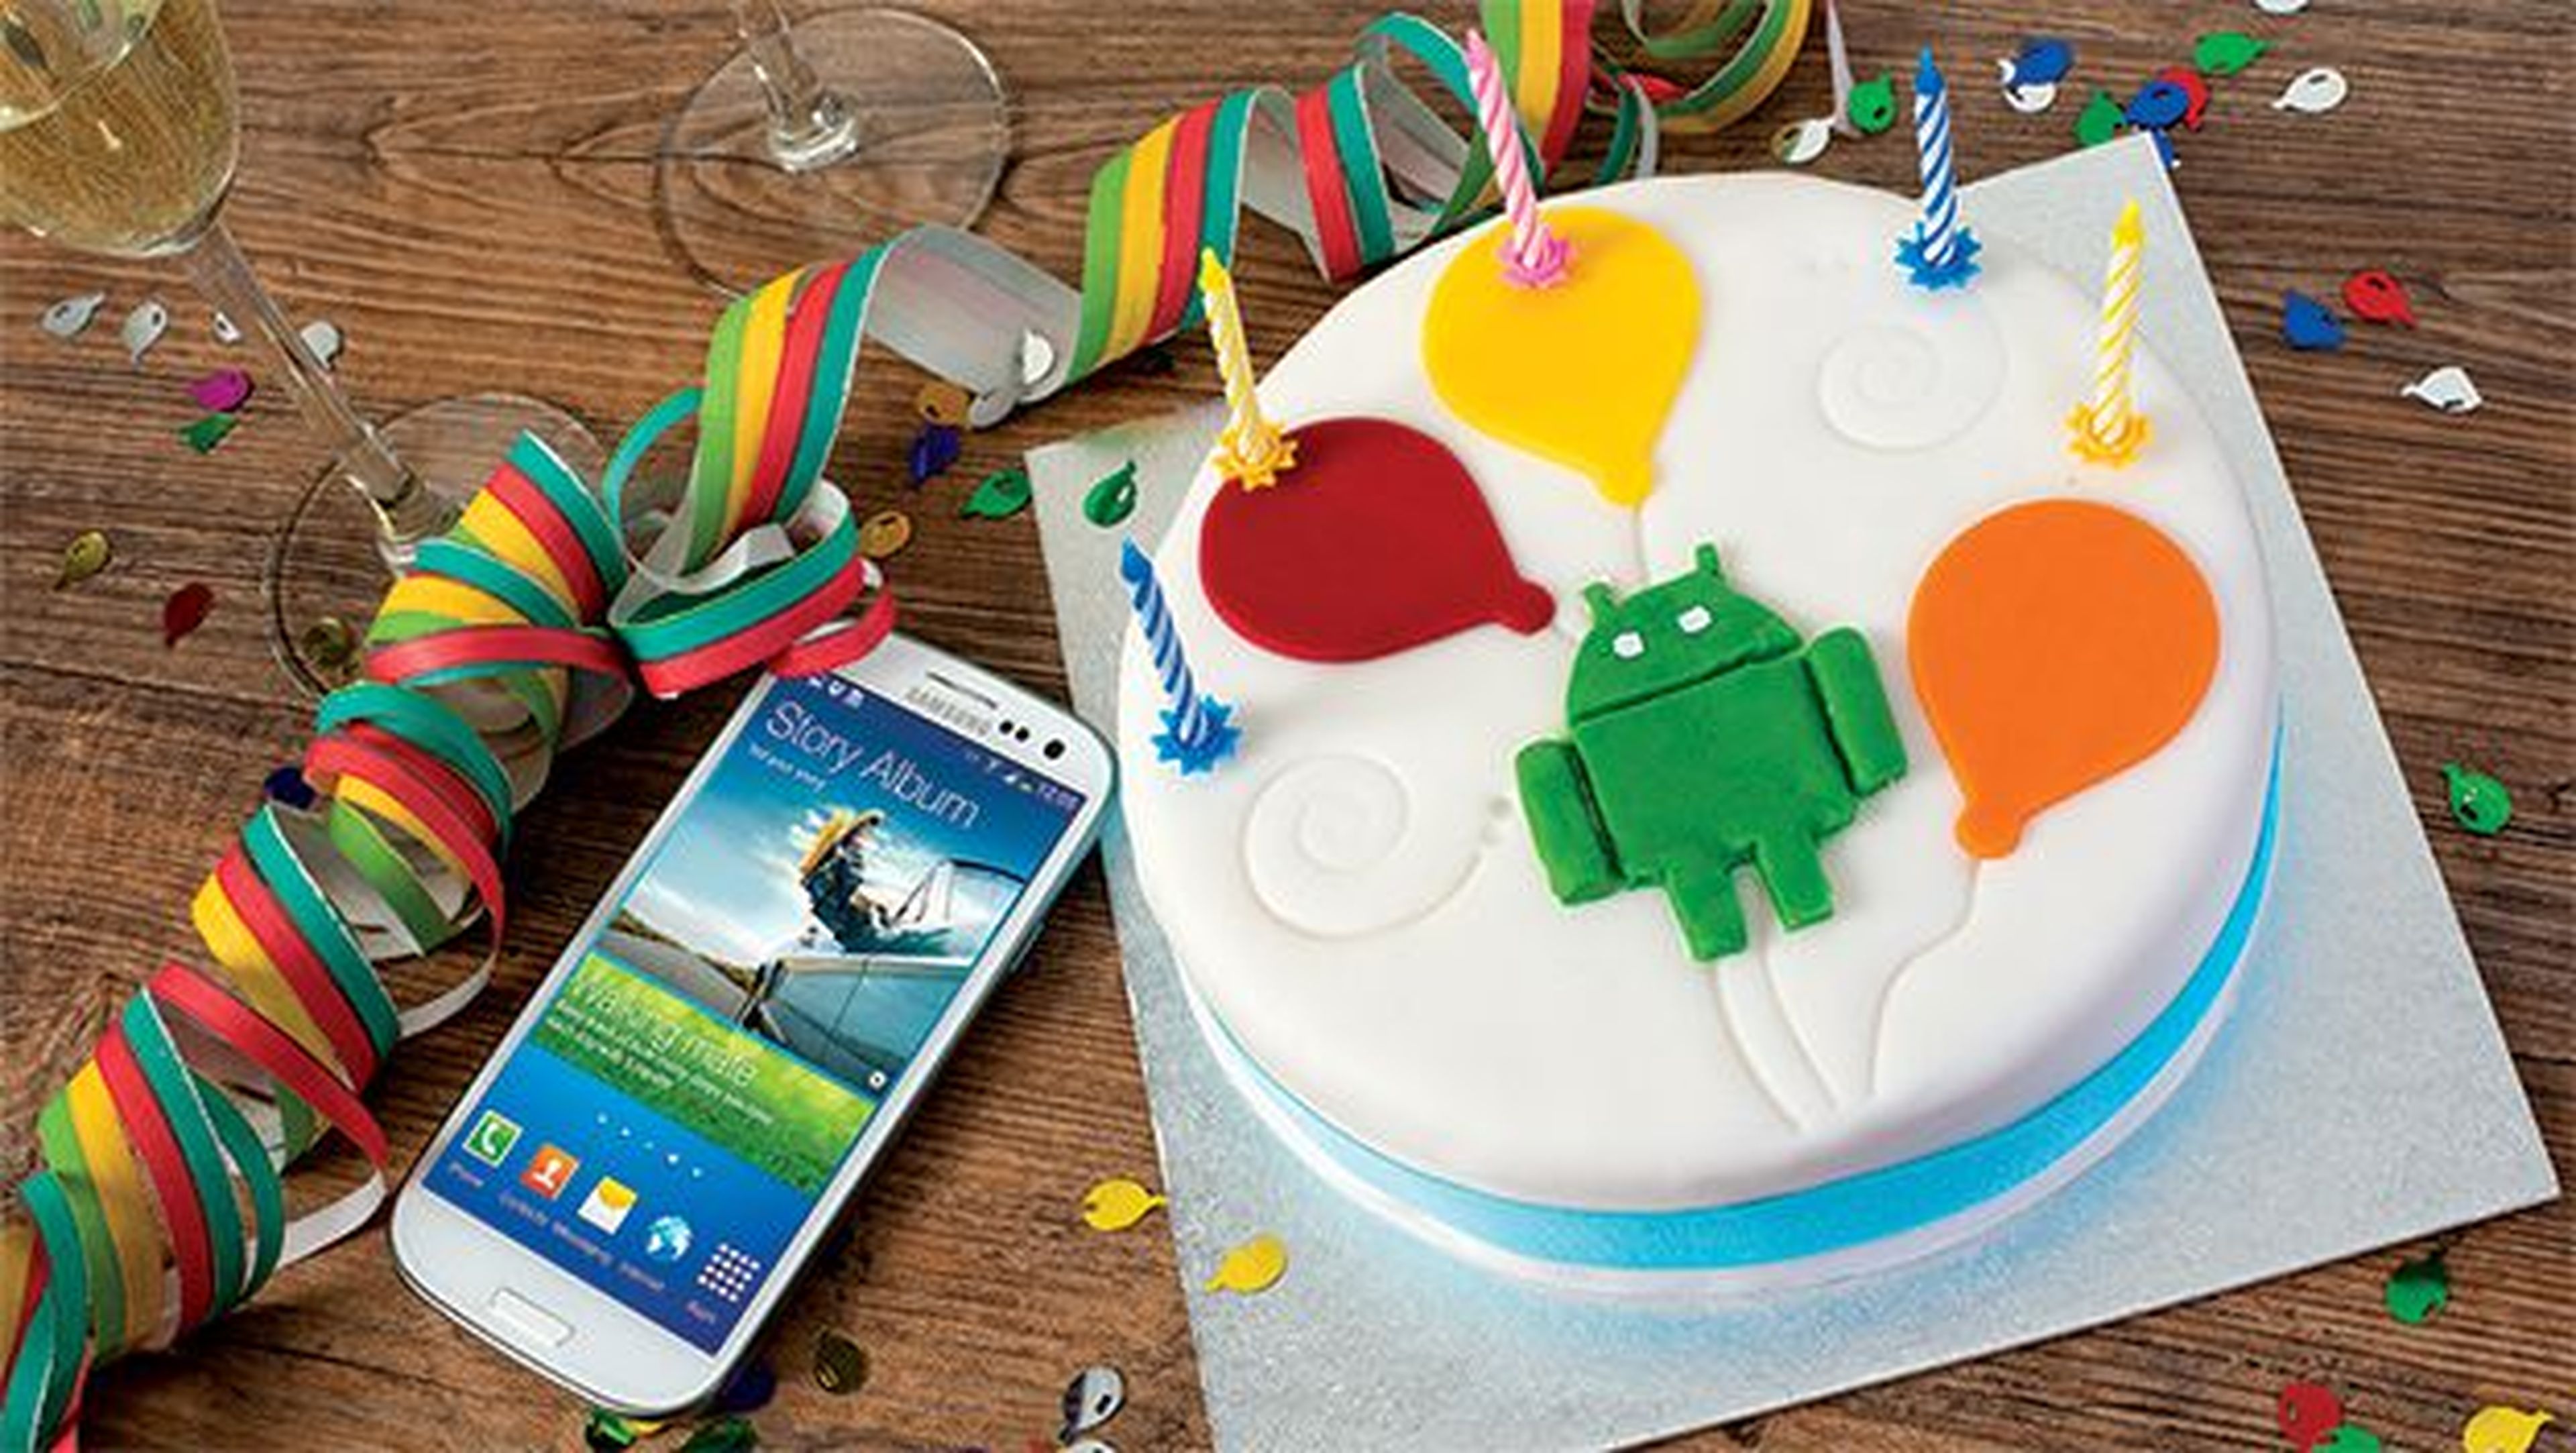 Android cumple 8 años: recordamos su dulce historia